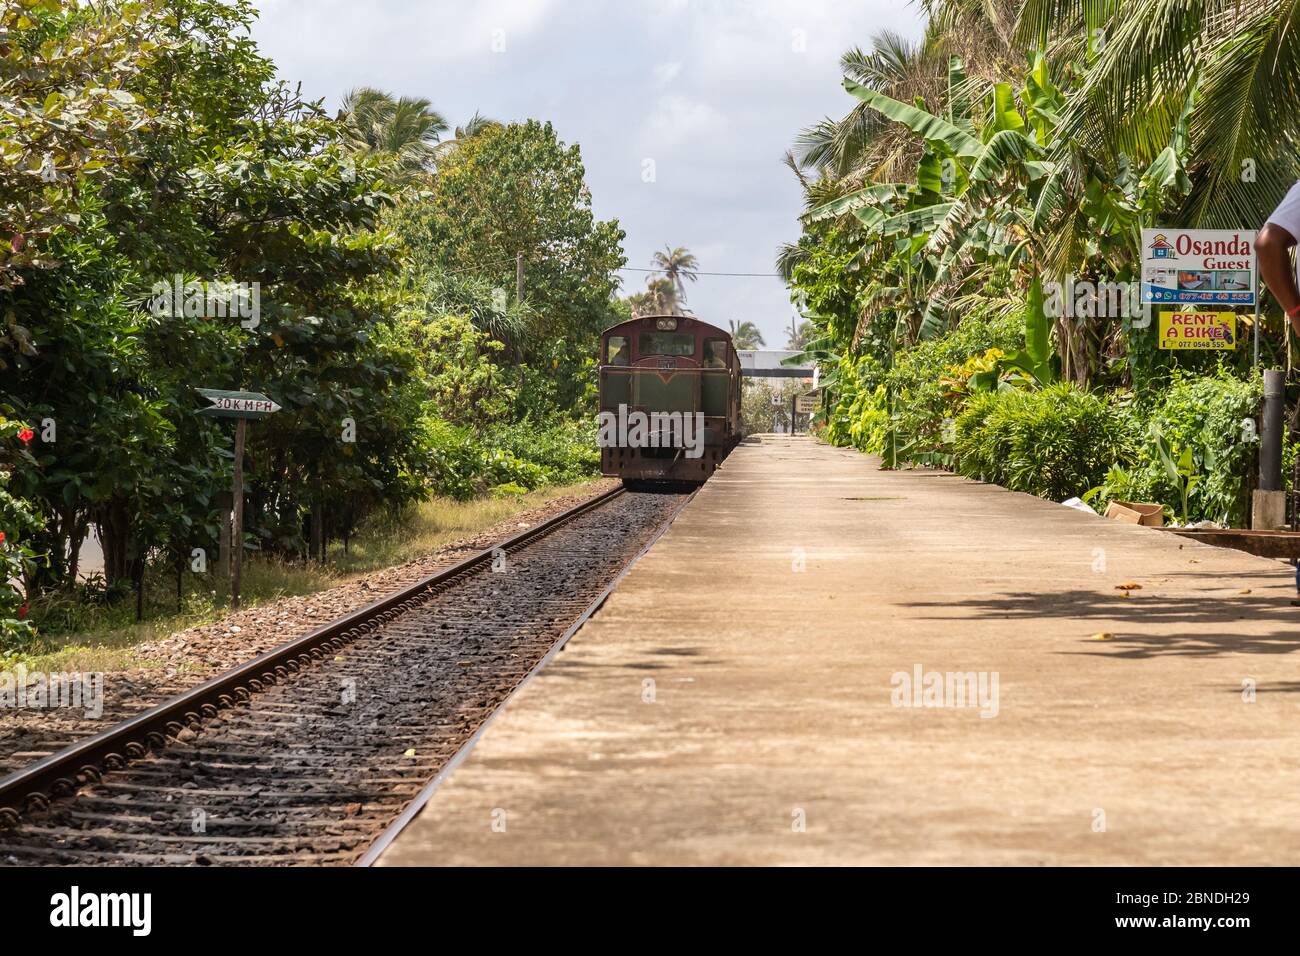 Train quittant une gare vue sur la plate-forme avec des arbres tropicaux luxuriants de chaque côté dans un concept de transport ferroviaire Banque D'Images